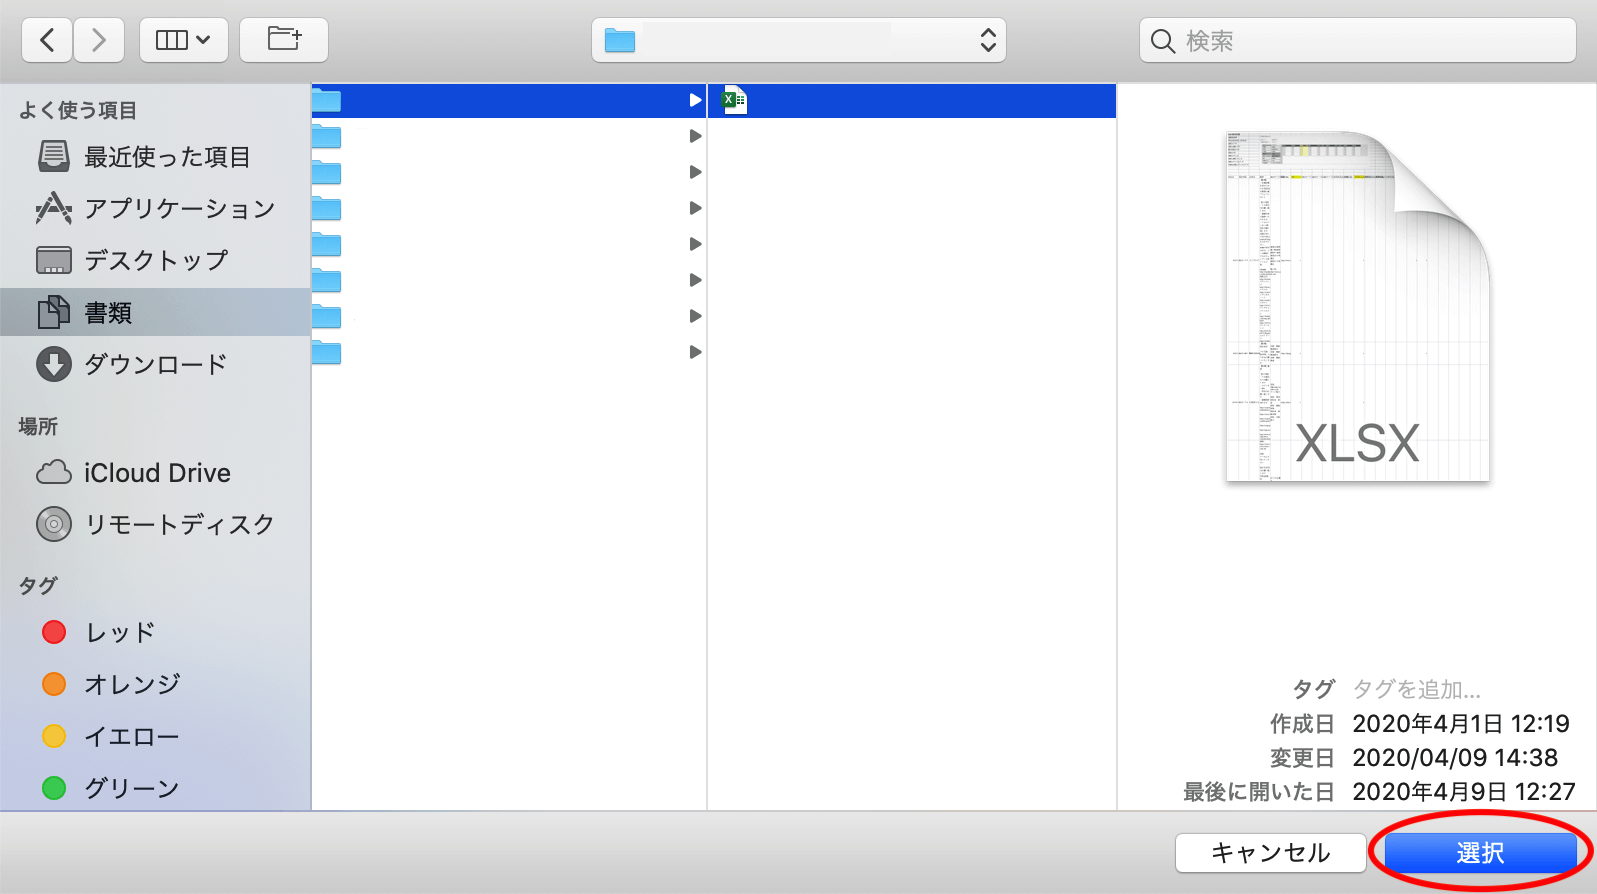 ファイルの選択画面が表示されるので、アップロードしたいファイルを選択し、「開く」または「選択」ボタンをクリックする。